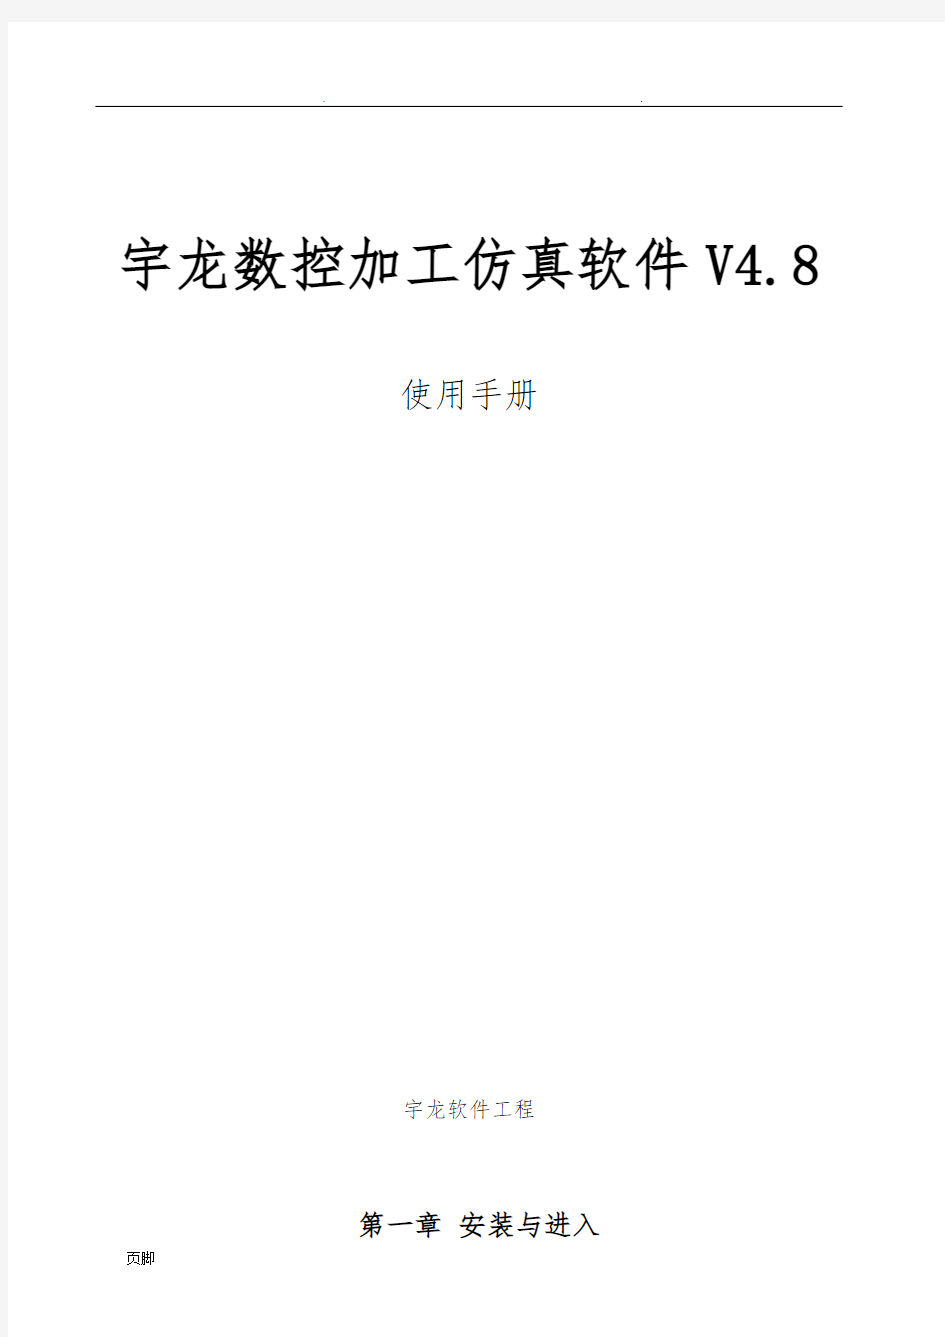 宇龙数控加工仿真软件V4.8使用手册范本